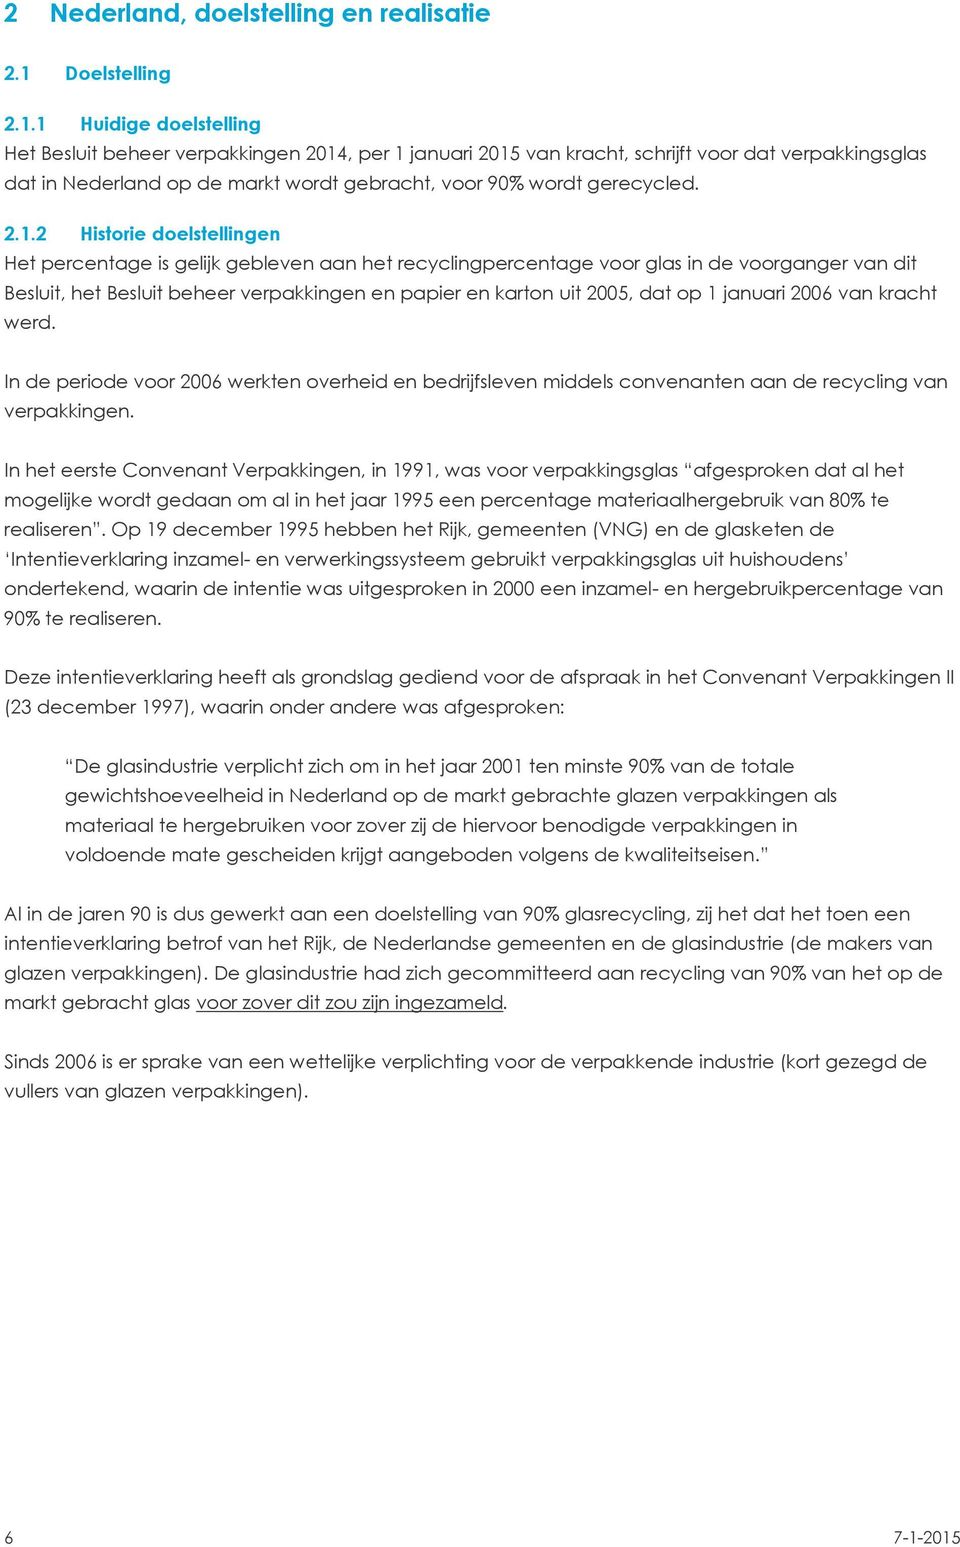 1 Huidige doelstelling Het Besluit beheer verpakkingen 2014, per 1 januari 2015 van kracht, schrijft voor dat verpakkingsglas dat in Nederland op de markt wordt gebracht, voor 90% wordt gerecycled.